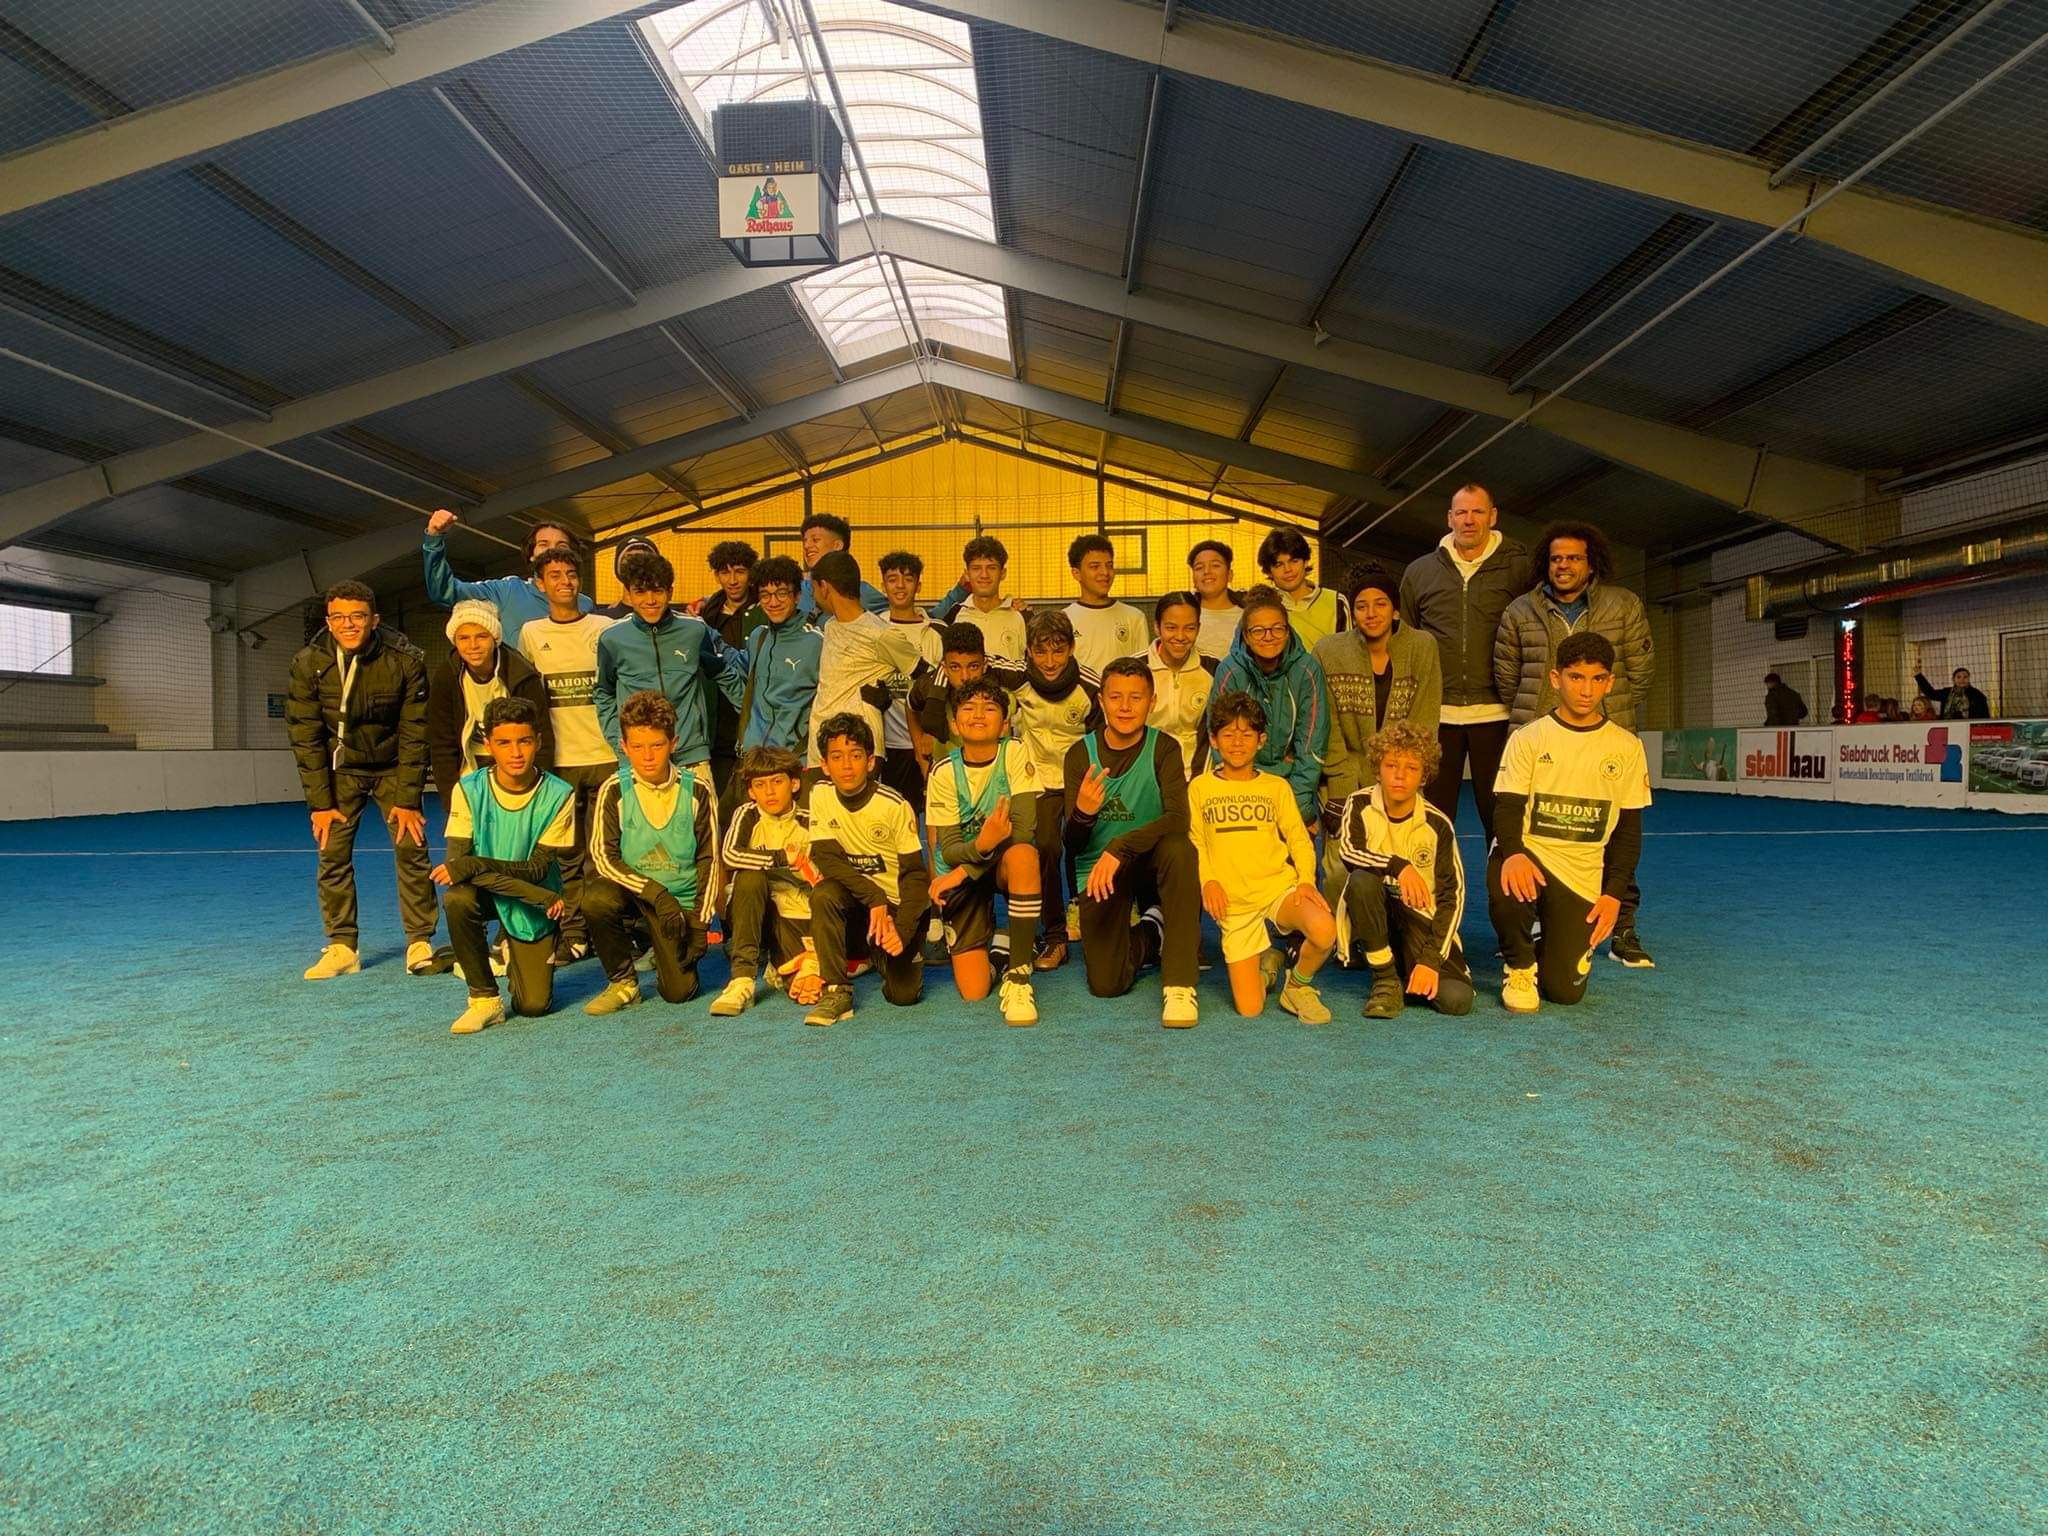 Die Egypt-German Soccer Acadamy von Sharm el Sheikh war bei uns